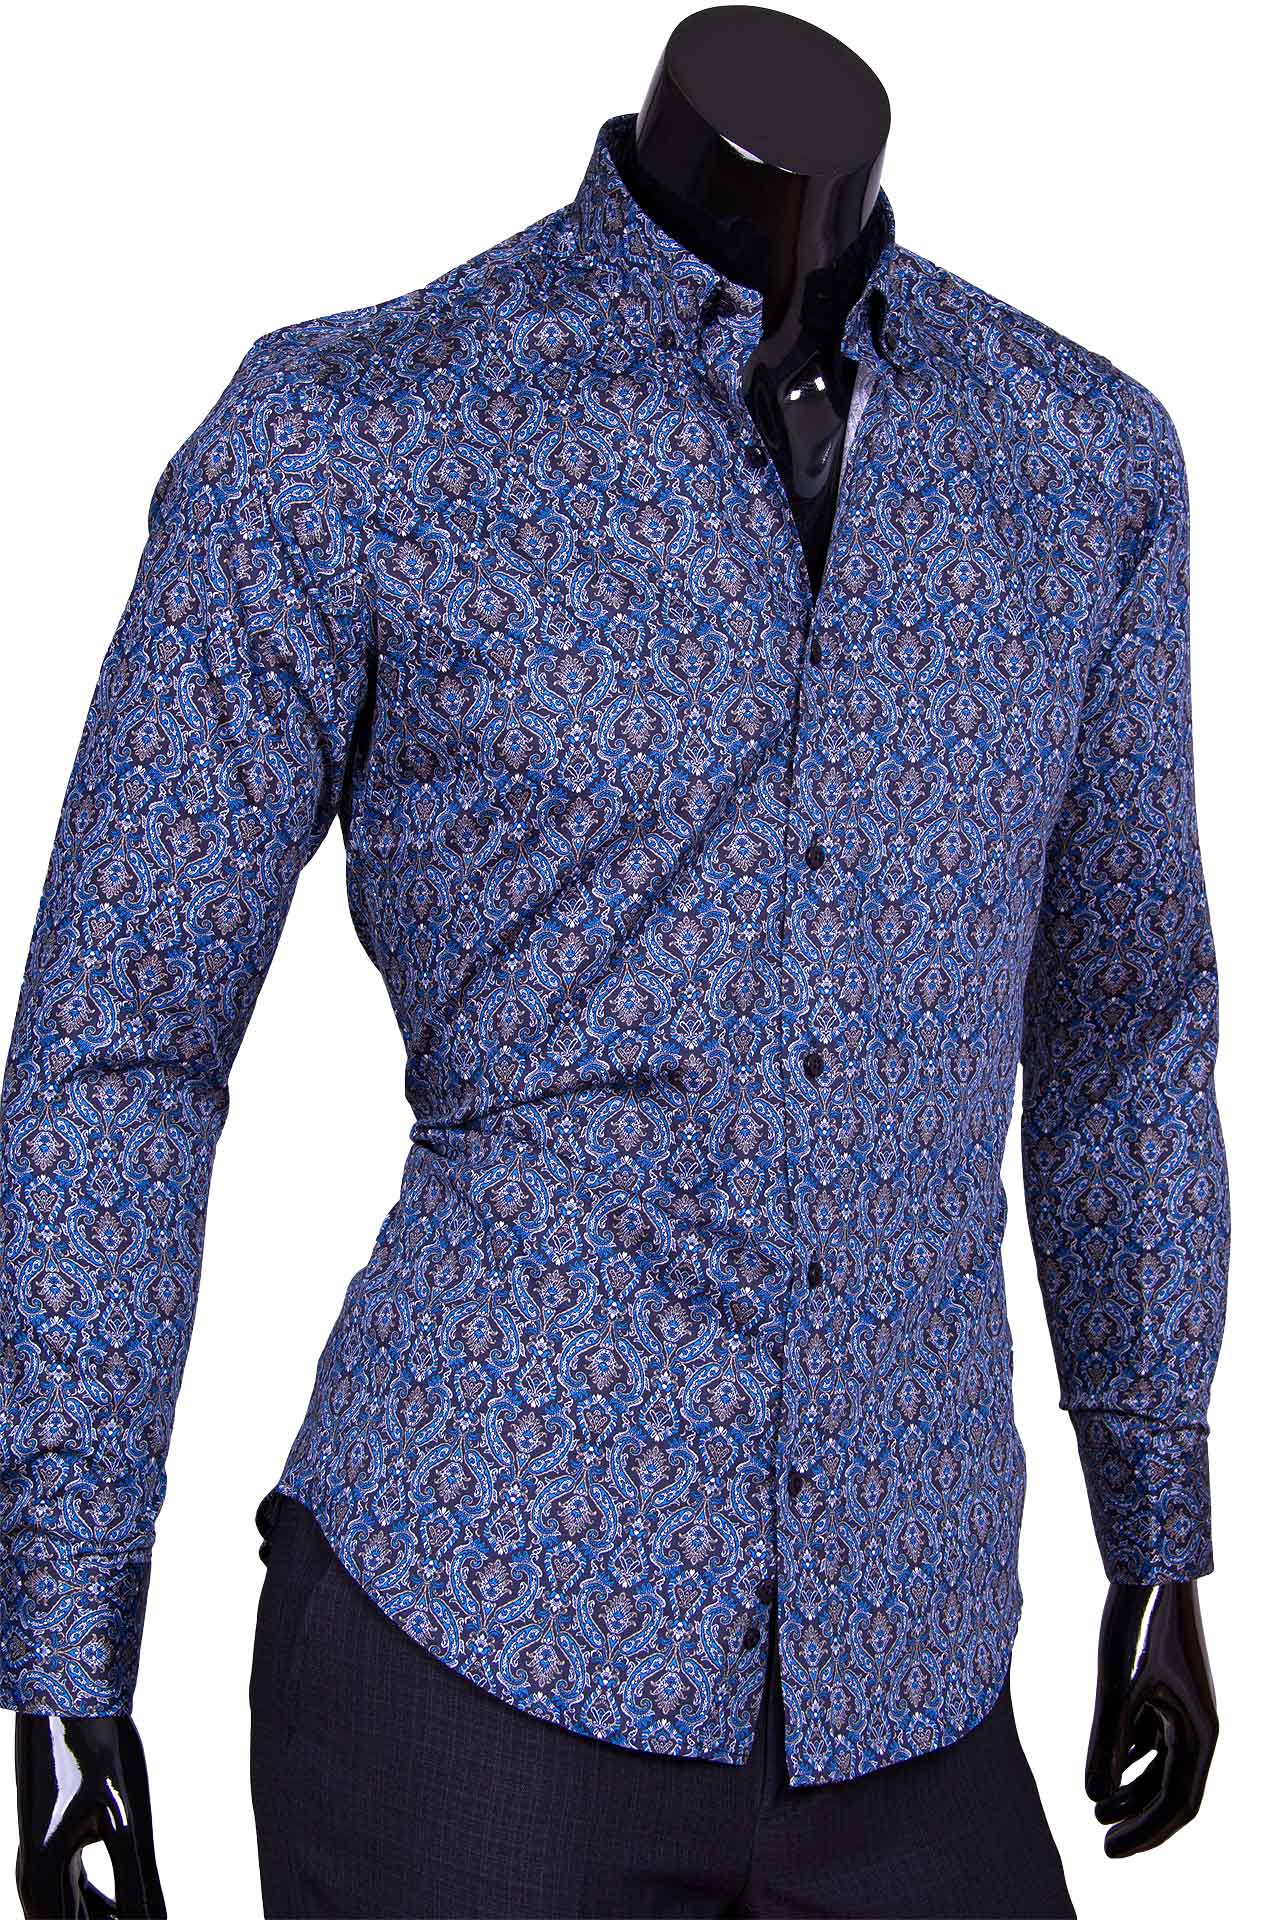 Мужская рубашка Marcel Massimo приталенная цвет темно синий в восточных огурцах купить в Москве недорого